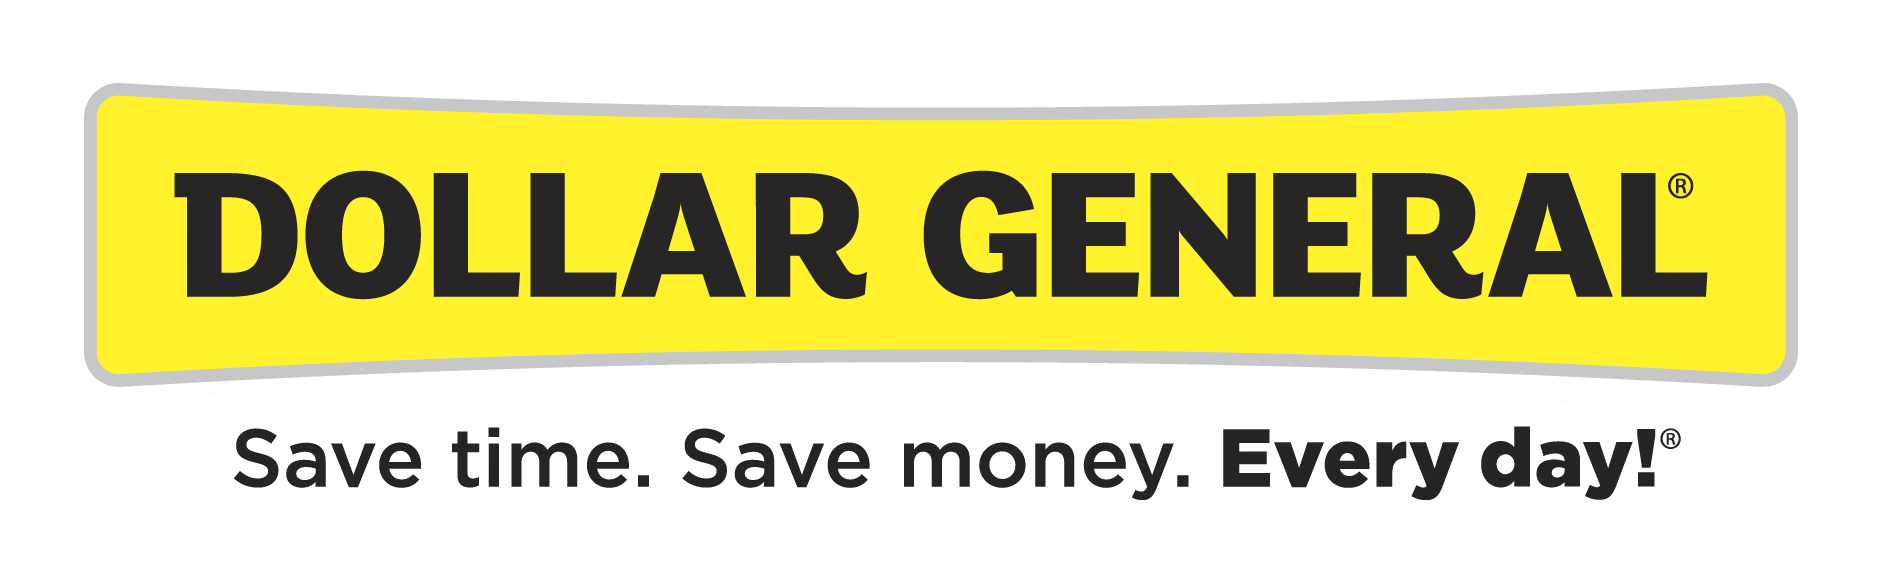 Dollar General Logo - Dollar General Logo PNG Image. Free transparent CC0 PNG